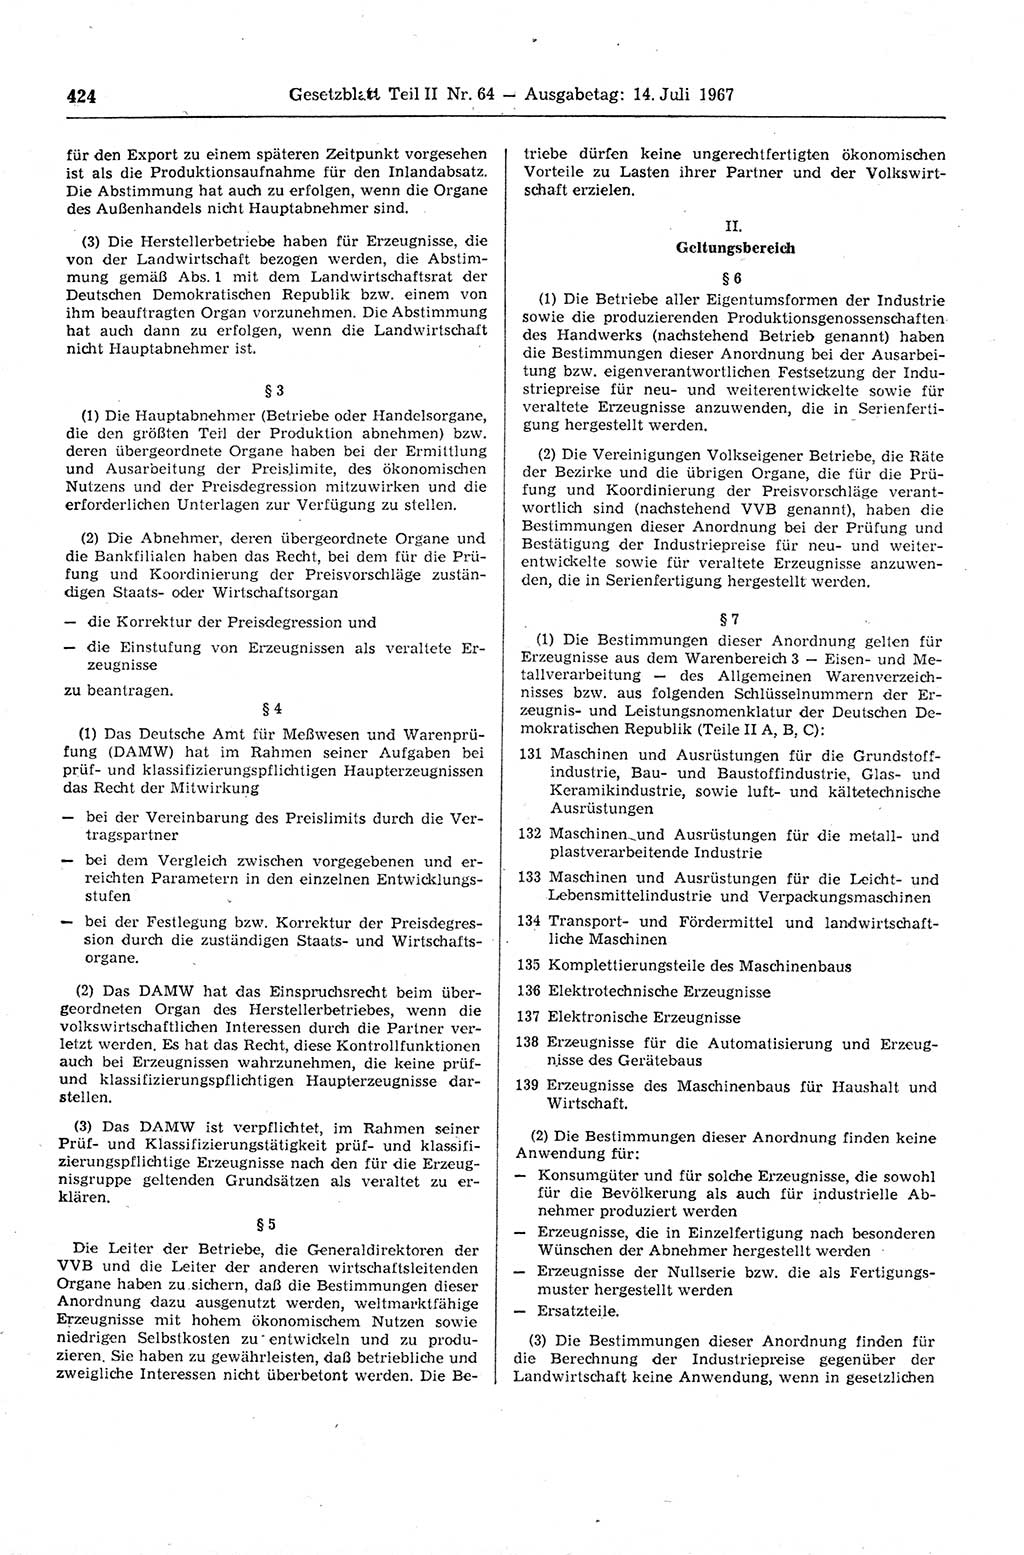 Gesetzblatt (GBl.) der Deutschen Demokratischen Republik (DDR) Teil ⅠⅠ 1967, Seite 424 (GBl. DDR ⅠⅠ 1967, S. 424)